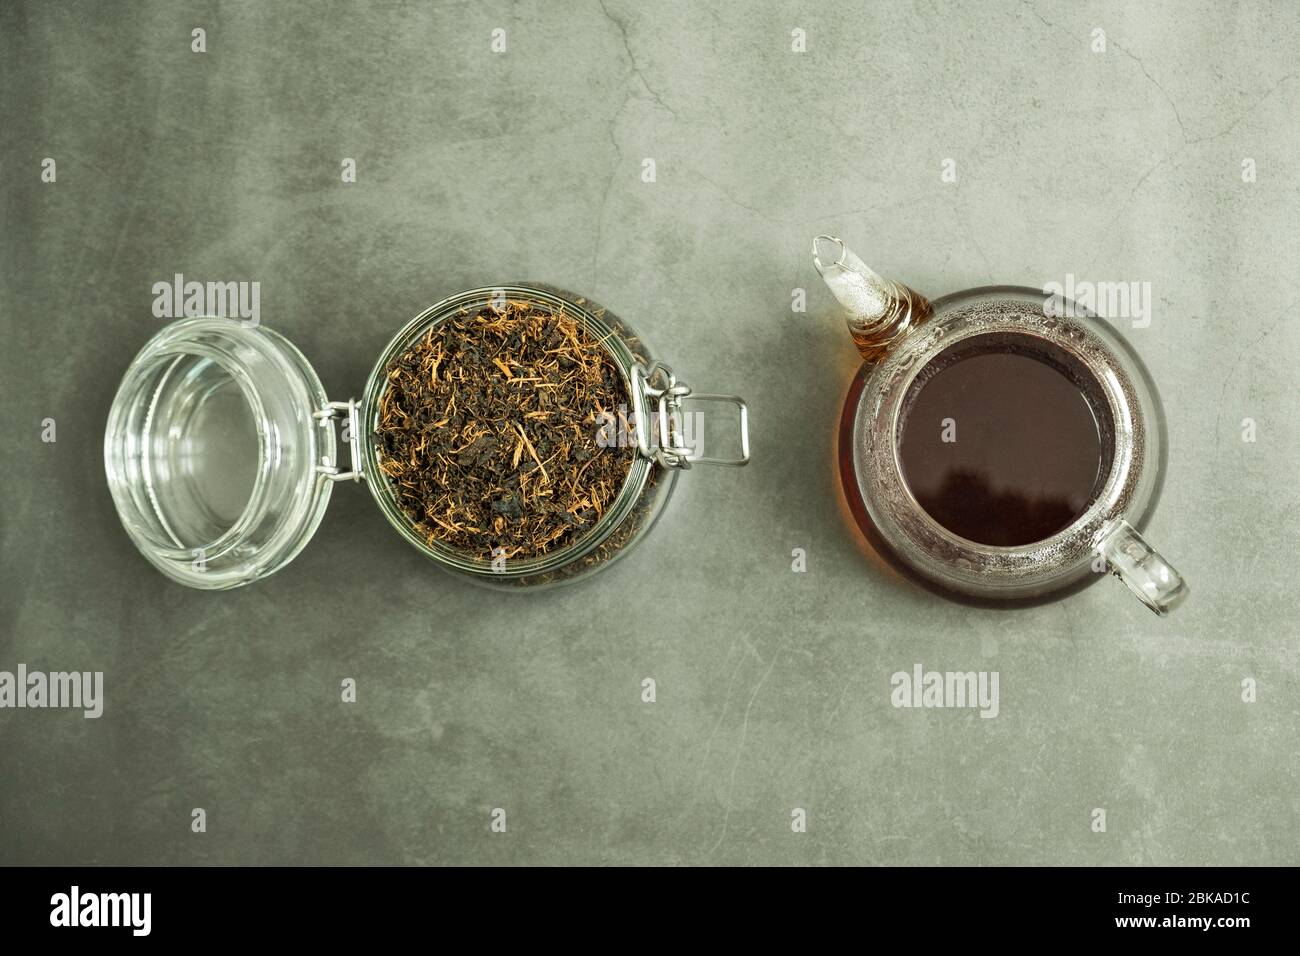 Trockenes schwarzes Teeblatt im Glasgefäß und frisch gebrühter frischer Tee in der Teekanne auf Beton, Steingrund. Traditionelles, gesundes und biologisches Getränk. Stockfoto